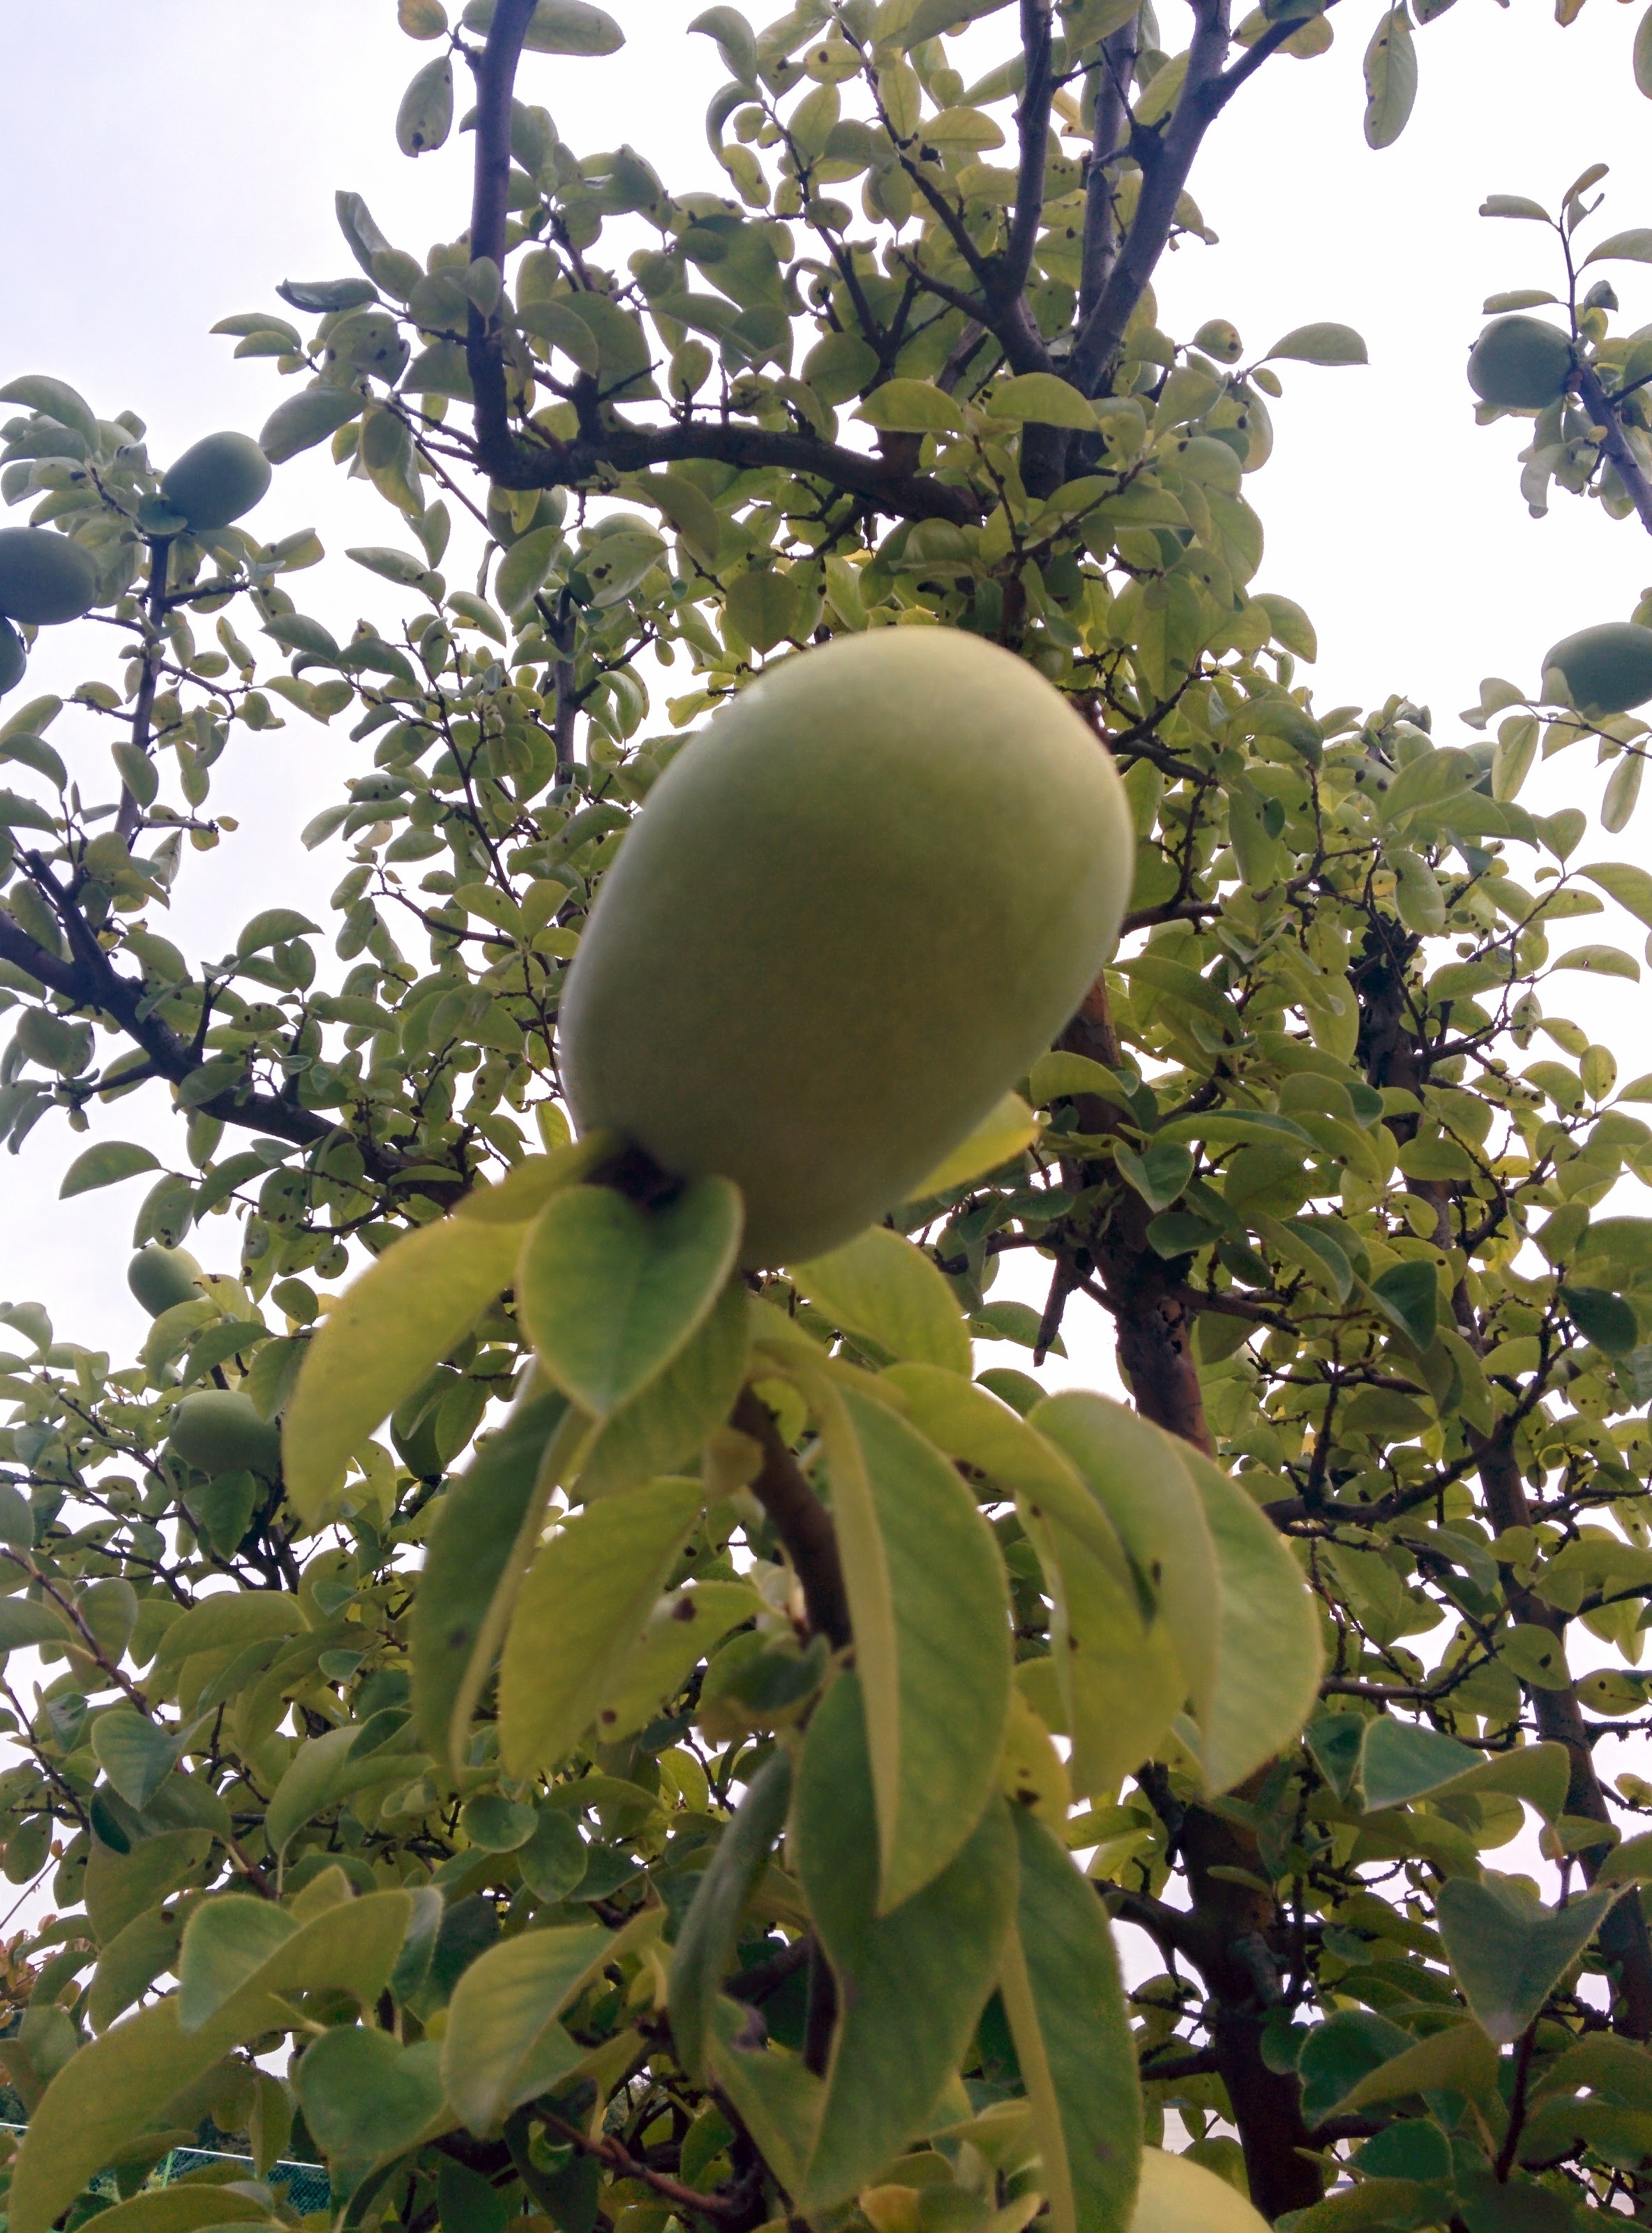 IMG_20150916_164901.jpg 과학기술연합대학원대학교 모과나무에 모과열매가 주렁주렁